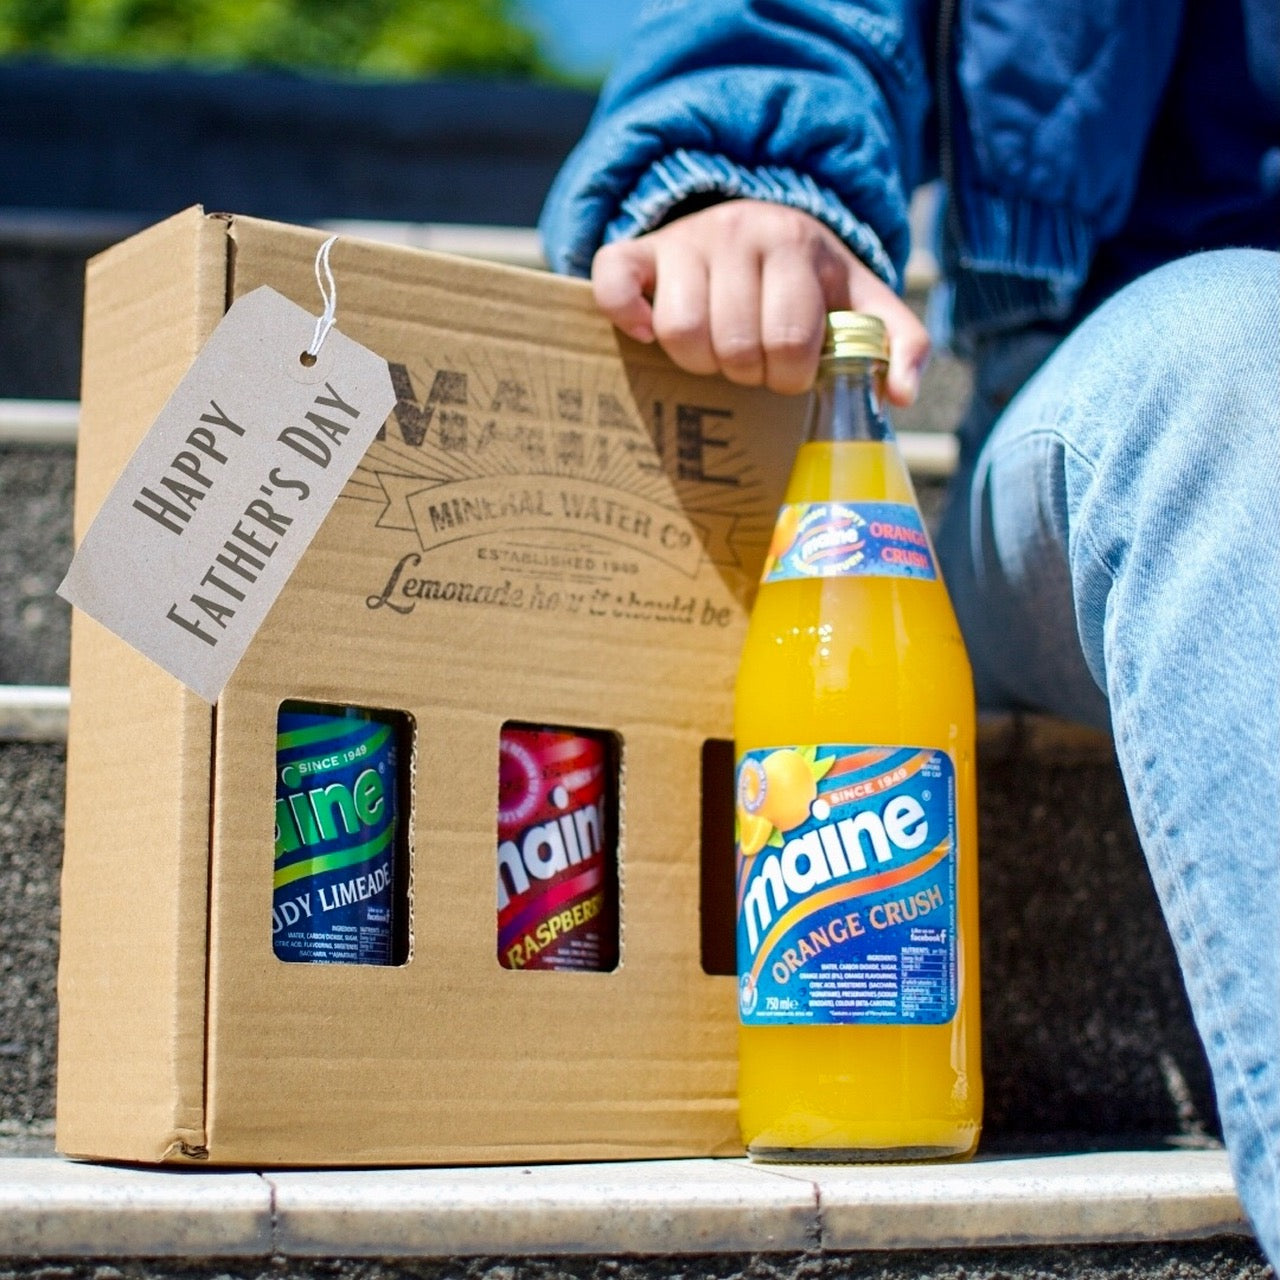 The Maine Gift Box